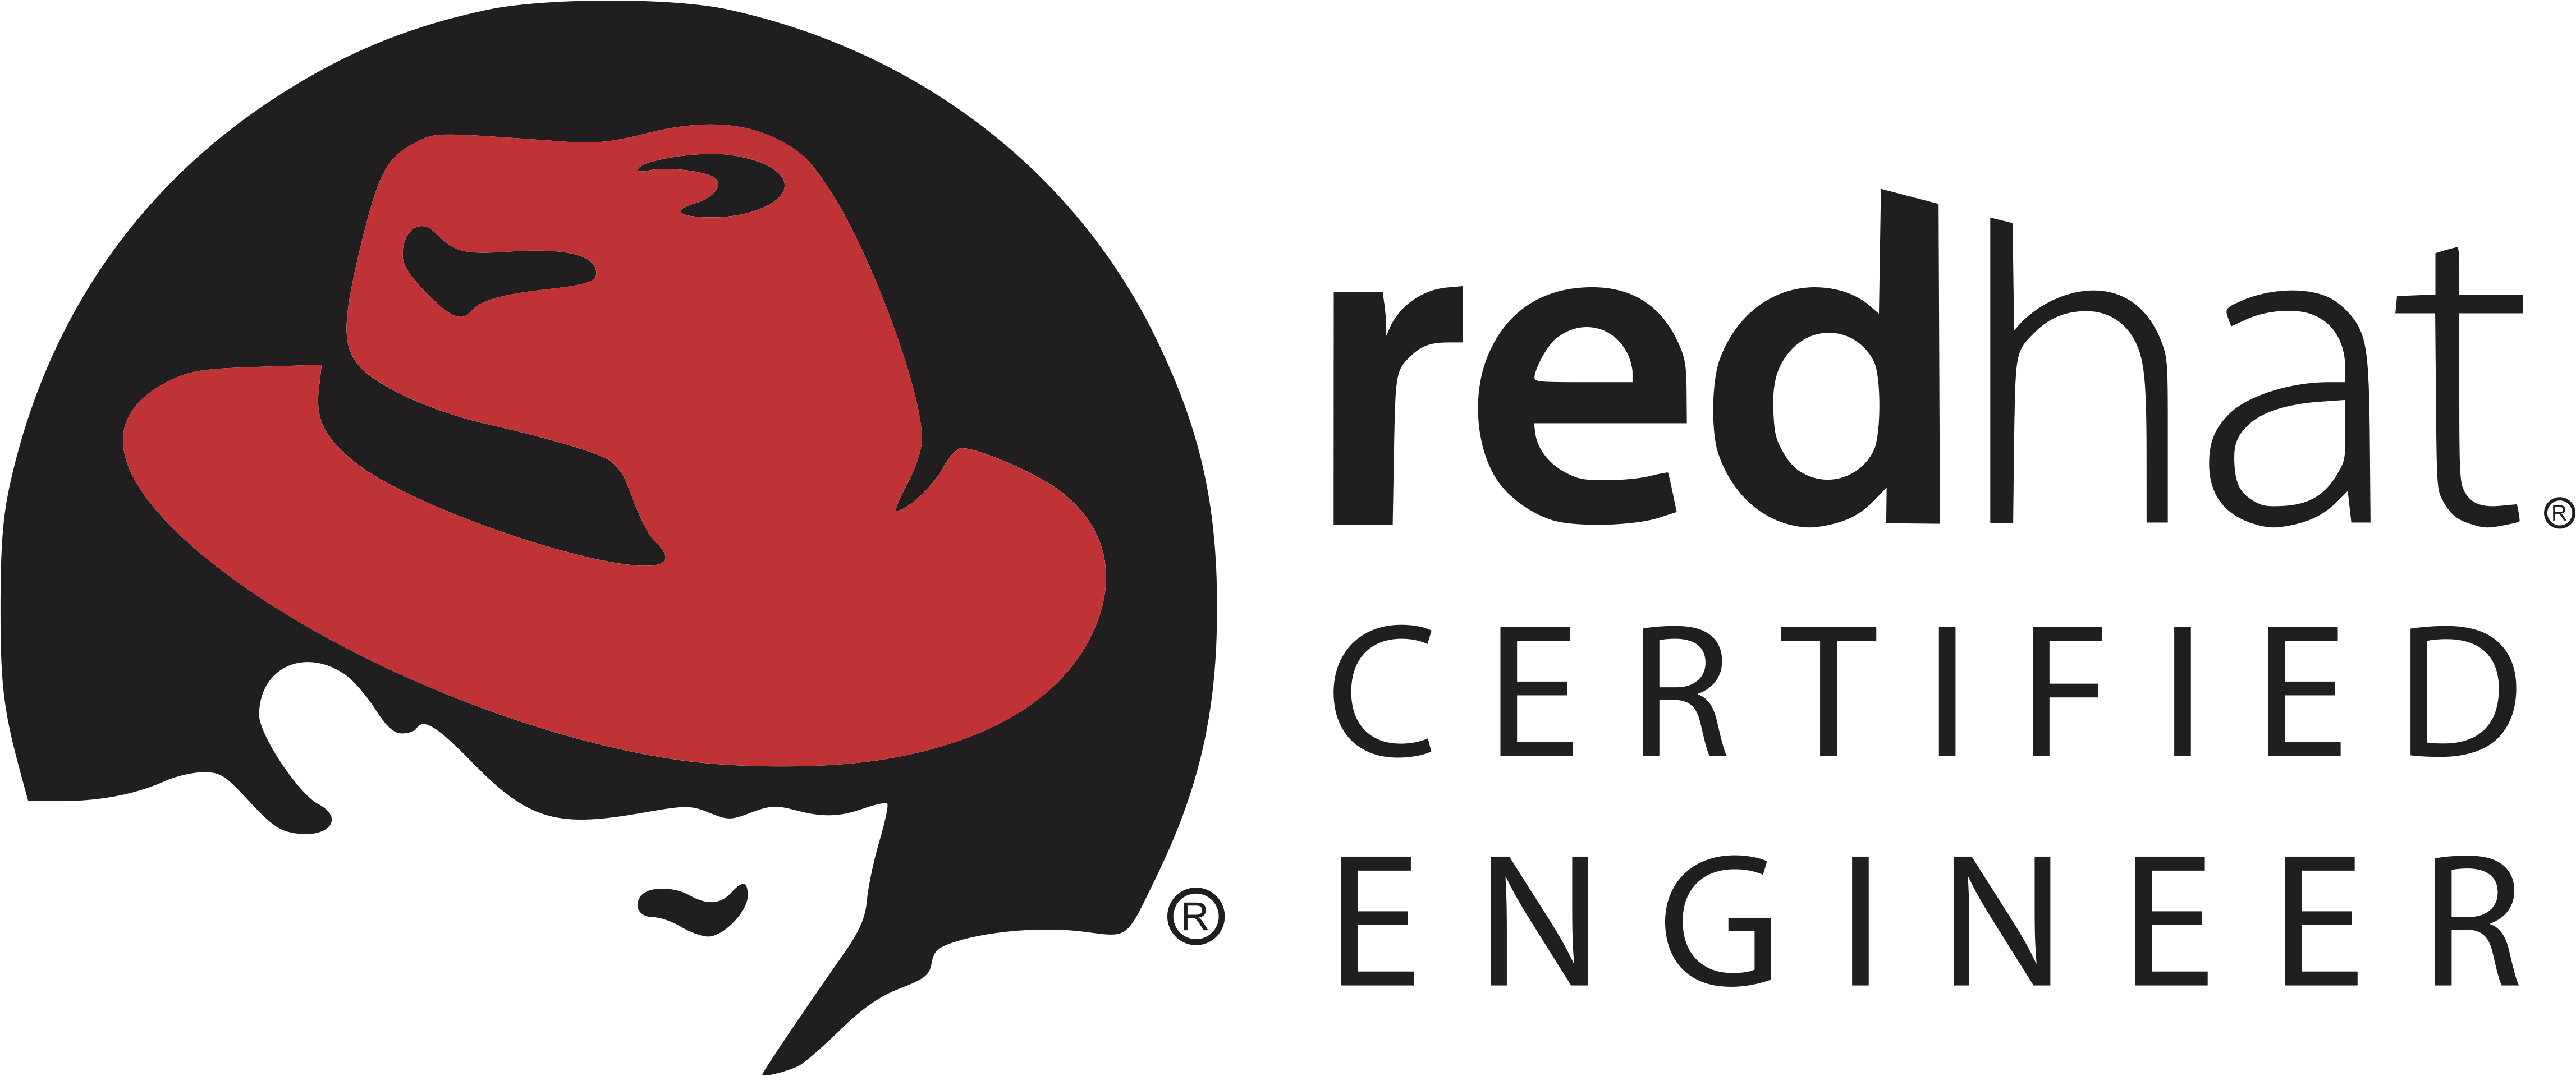 Certification Enterprise Program Linux Hat Red PNG Image